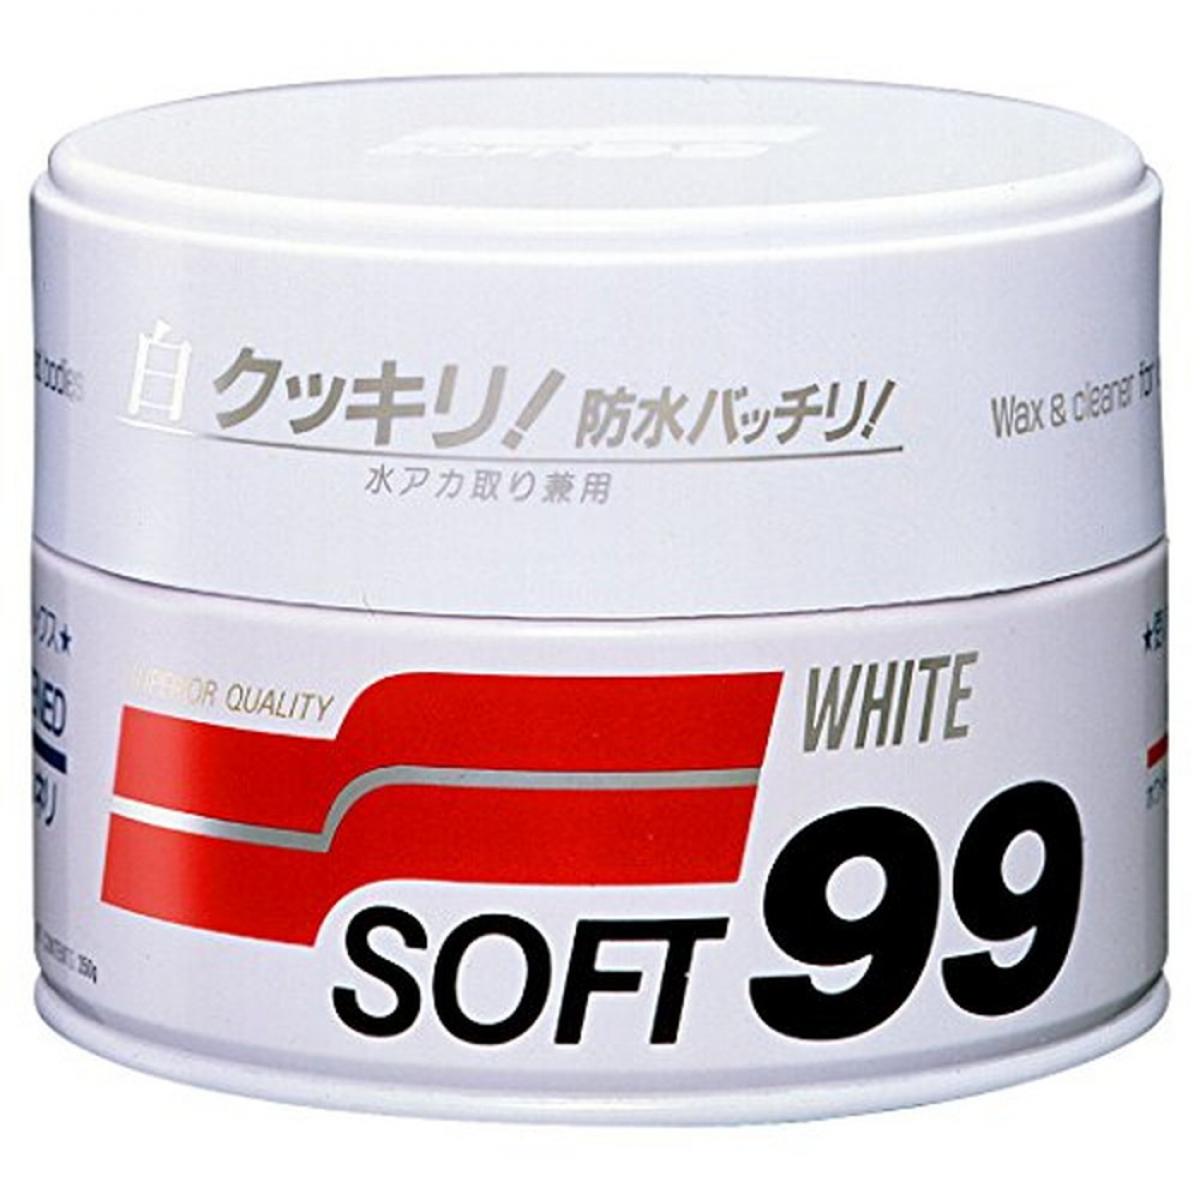 SOFT99 ( ソフト99 ) ワックス ニューソフト99 ホワイト ハンネリ 350g 0002